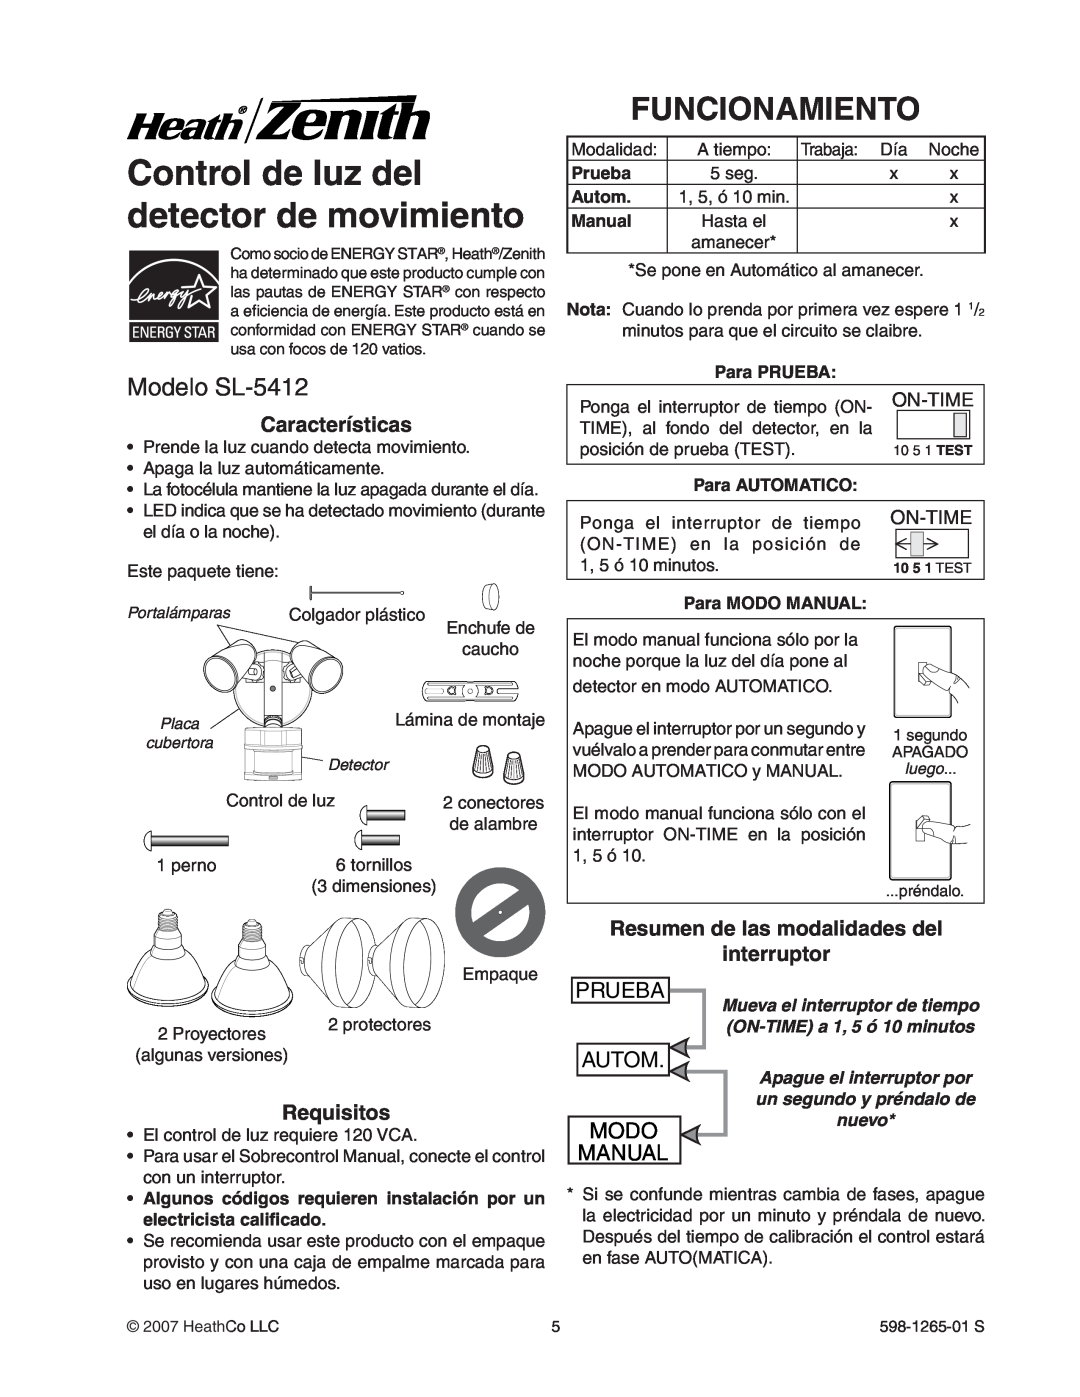 Heath Zenith Control de luz del detector de movimiento, Funcionamiento, Modelo SL-5412, Prueba, Autom, Modo, Manual 